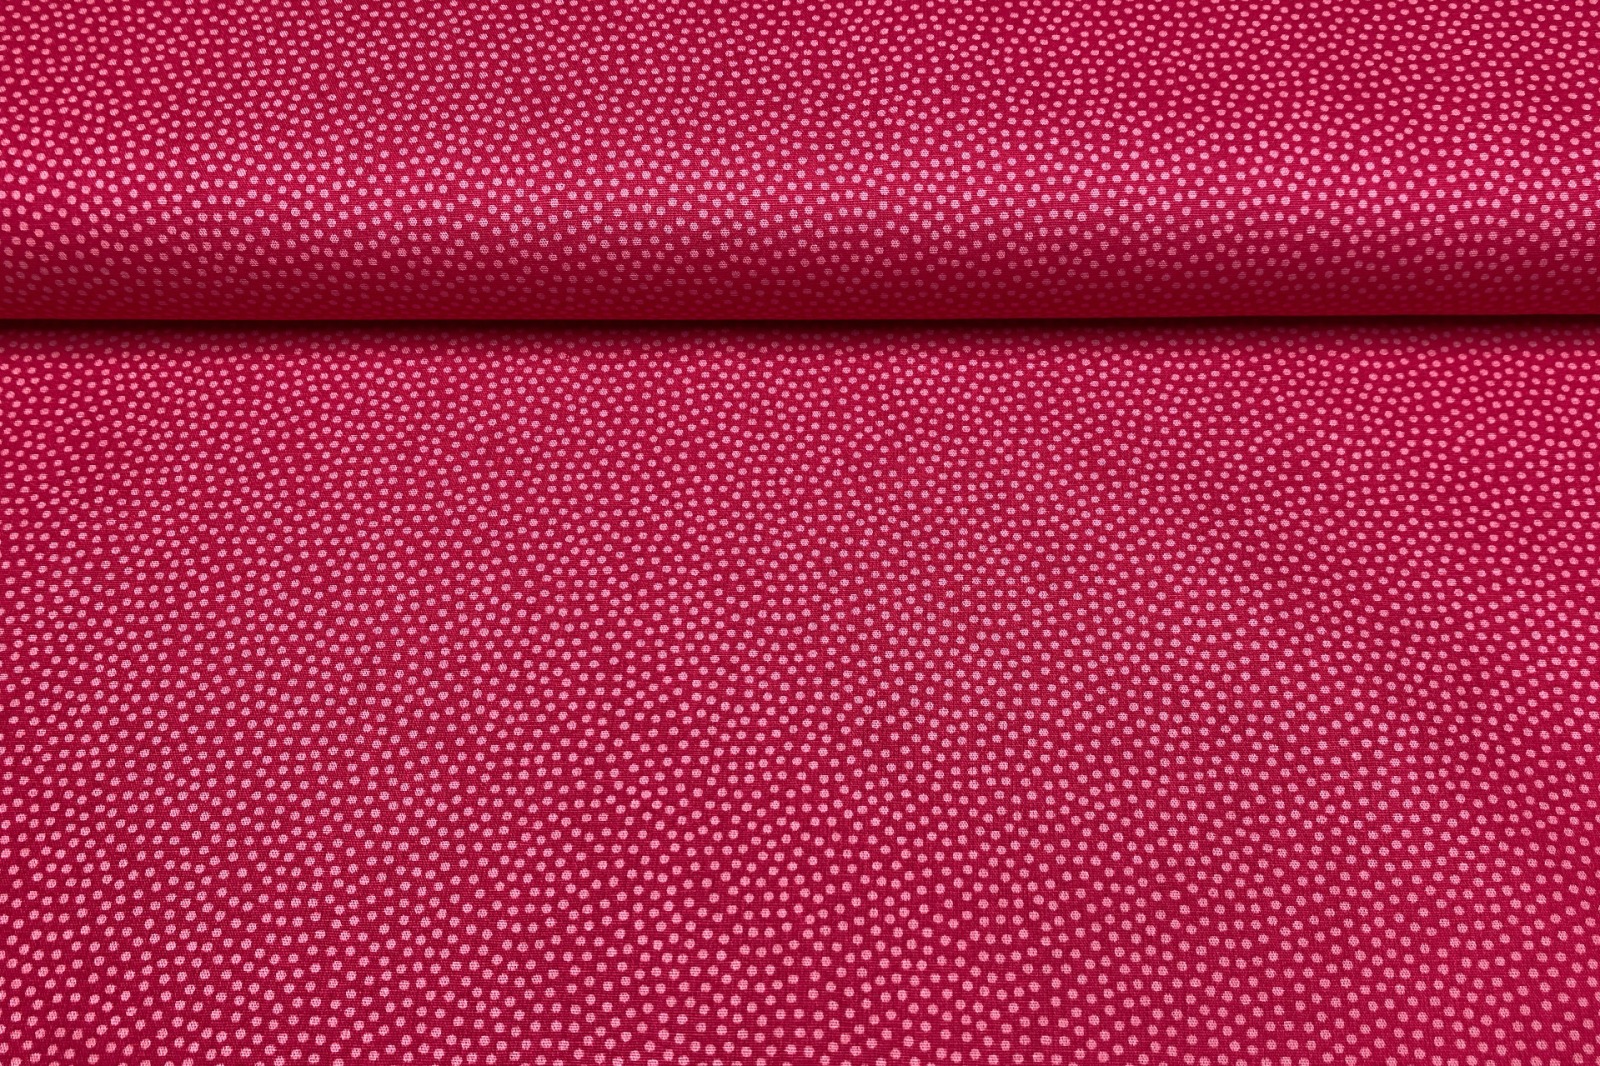 Baumwollwebware - unregelmäßige Punkte - pink/rosa - 100% Baumwolle - Dotty - Swafing 2